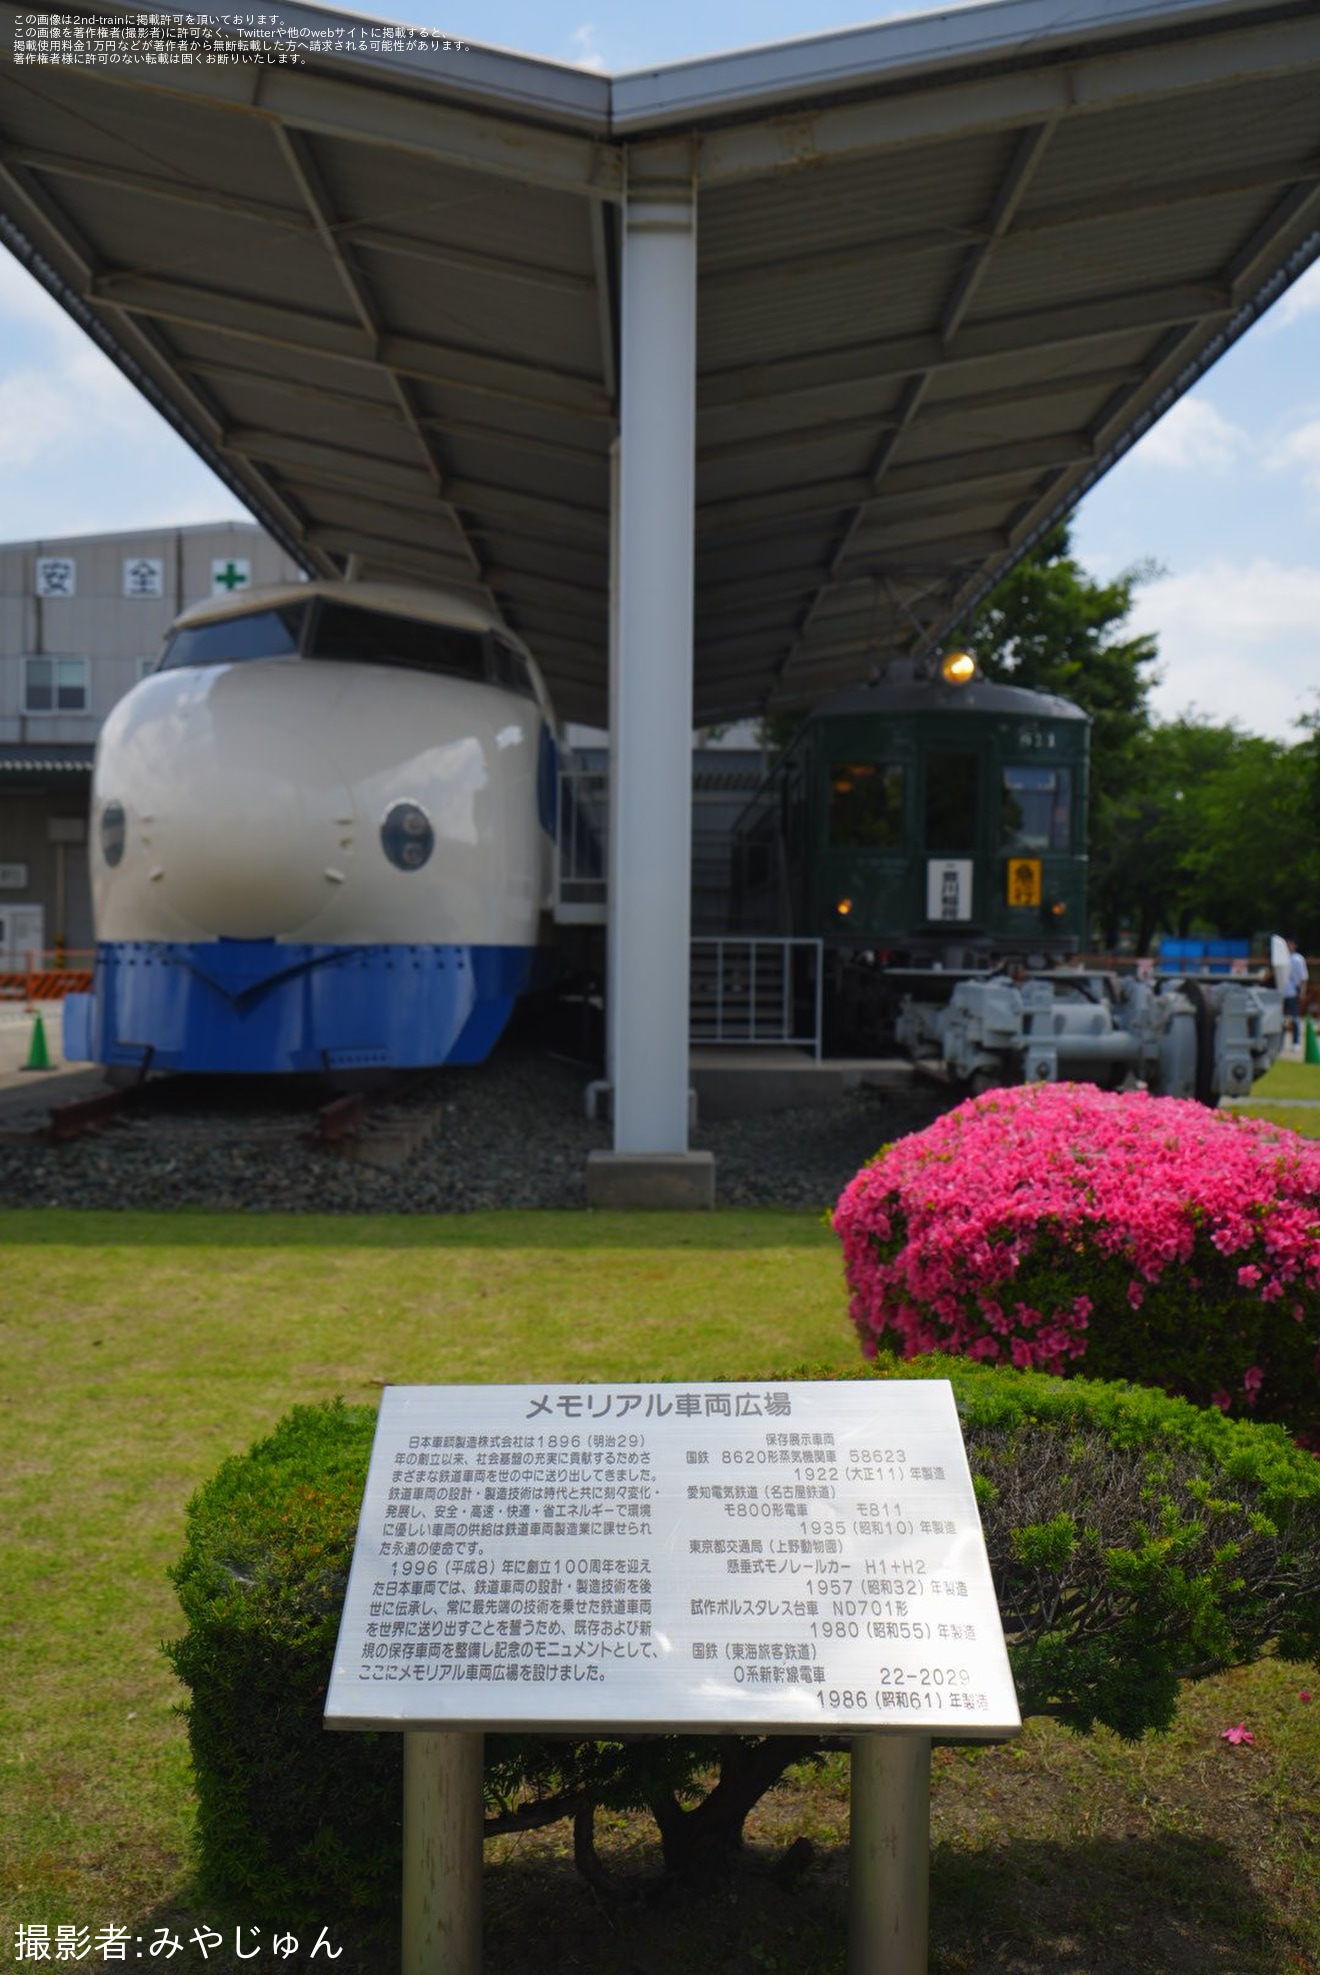 【日車】豊川製作所 「メモリアル車両広場」が一般公開の拡大写真